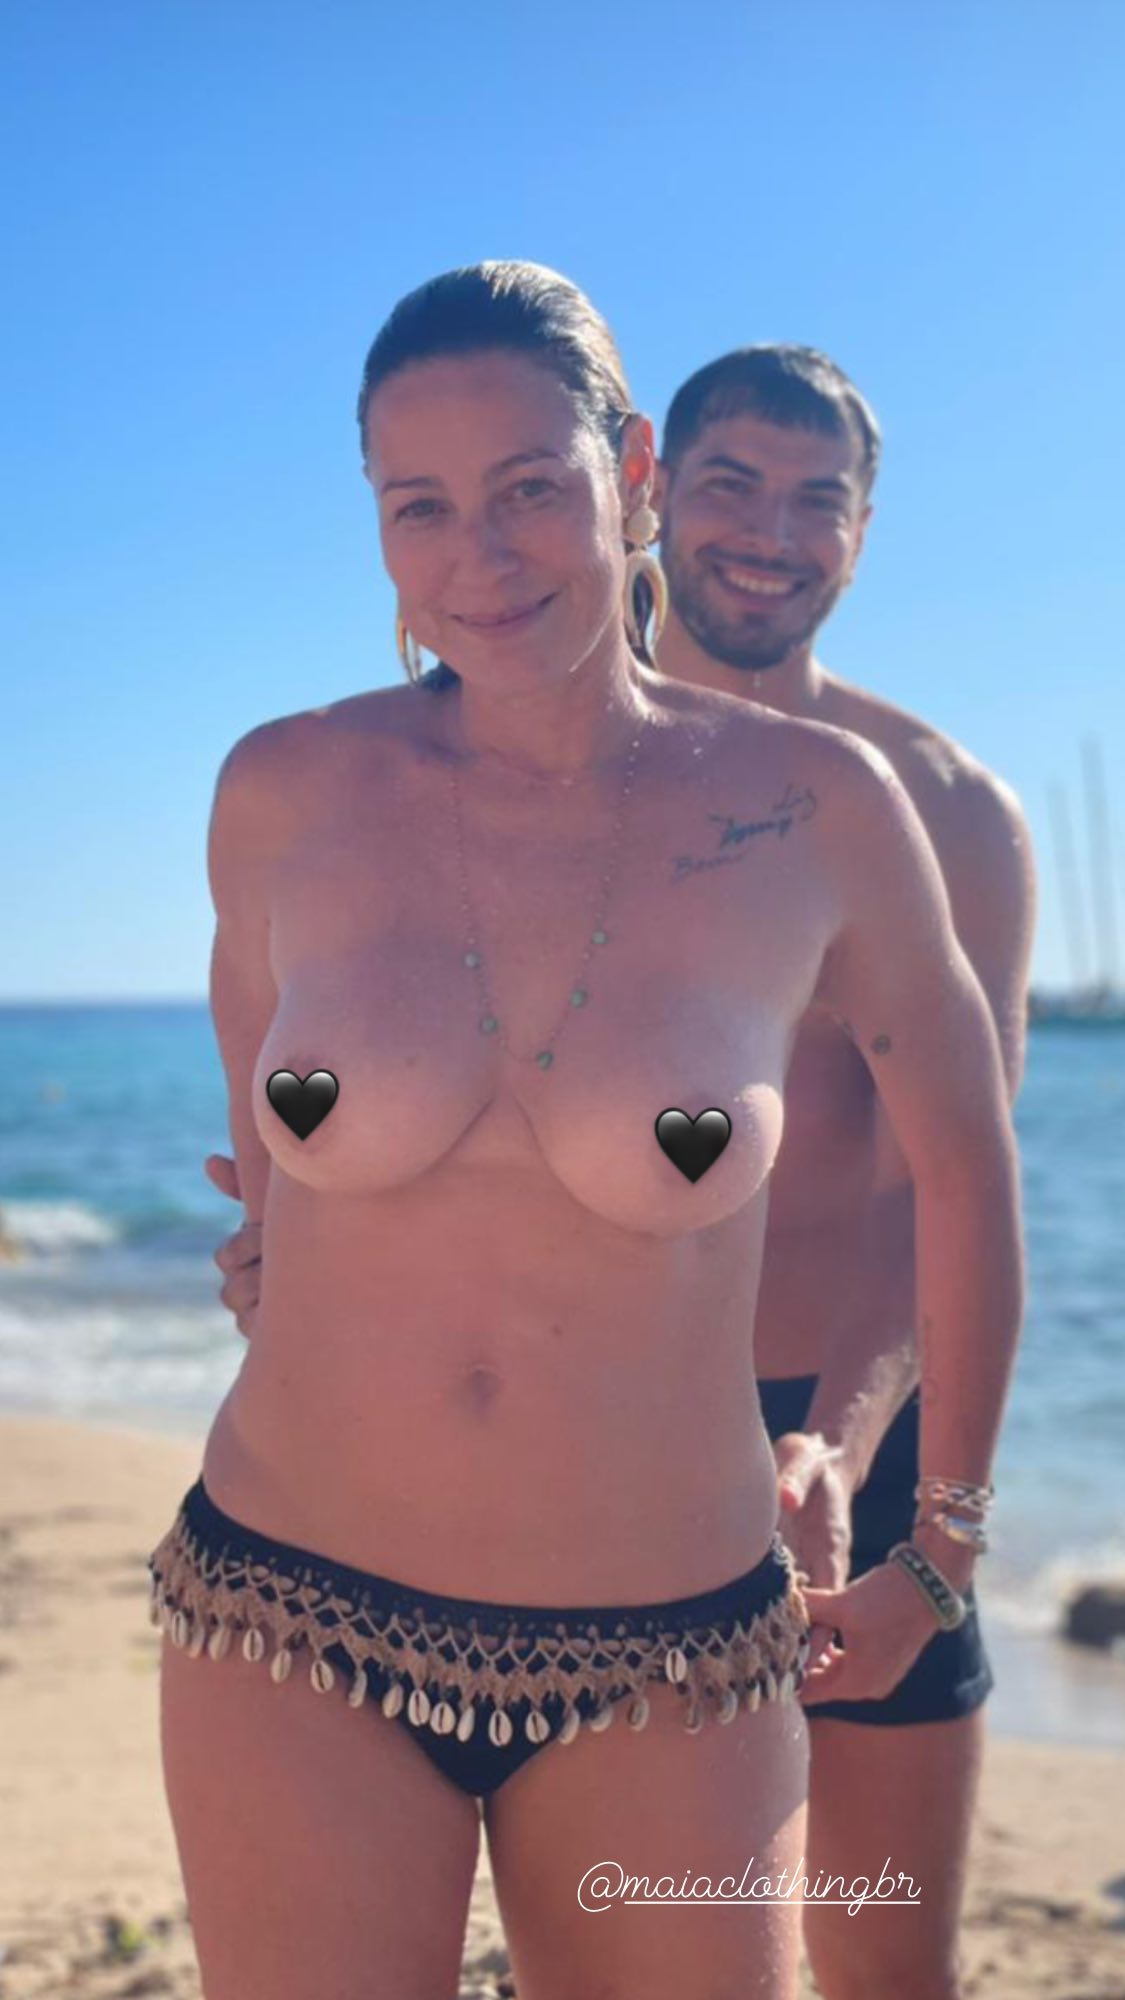 Atriz usou coraçõezinhos para "burlar" as proibições do Instagram. Luana Piovani aparece fazendo topless ao lado do namorado; foto